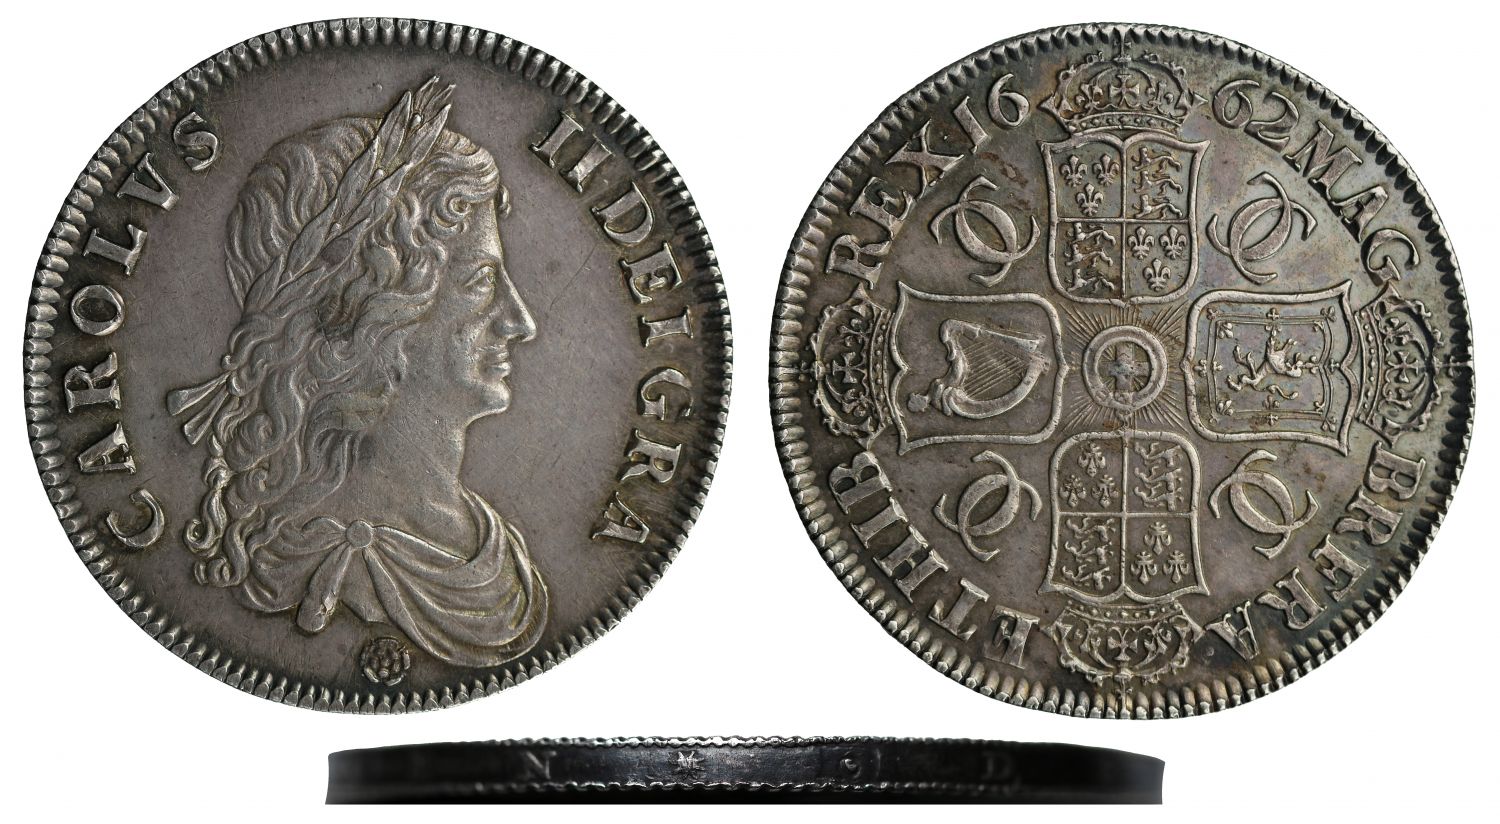 Charles II 1662 fine work Crown